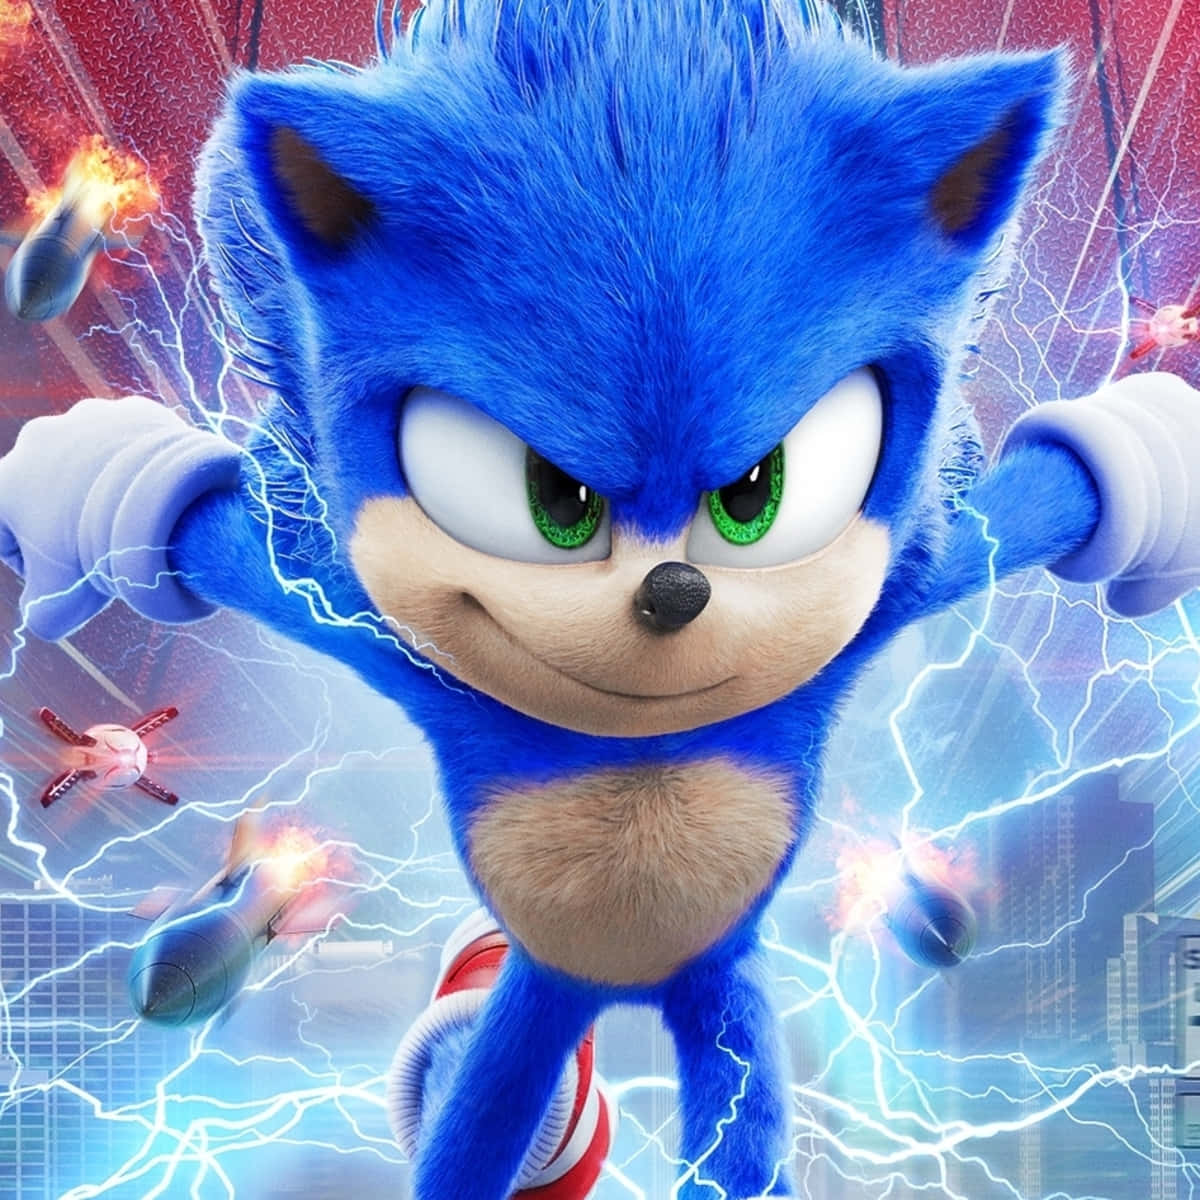 Pósterde La Película De Sonic The Hedgehog